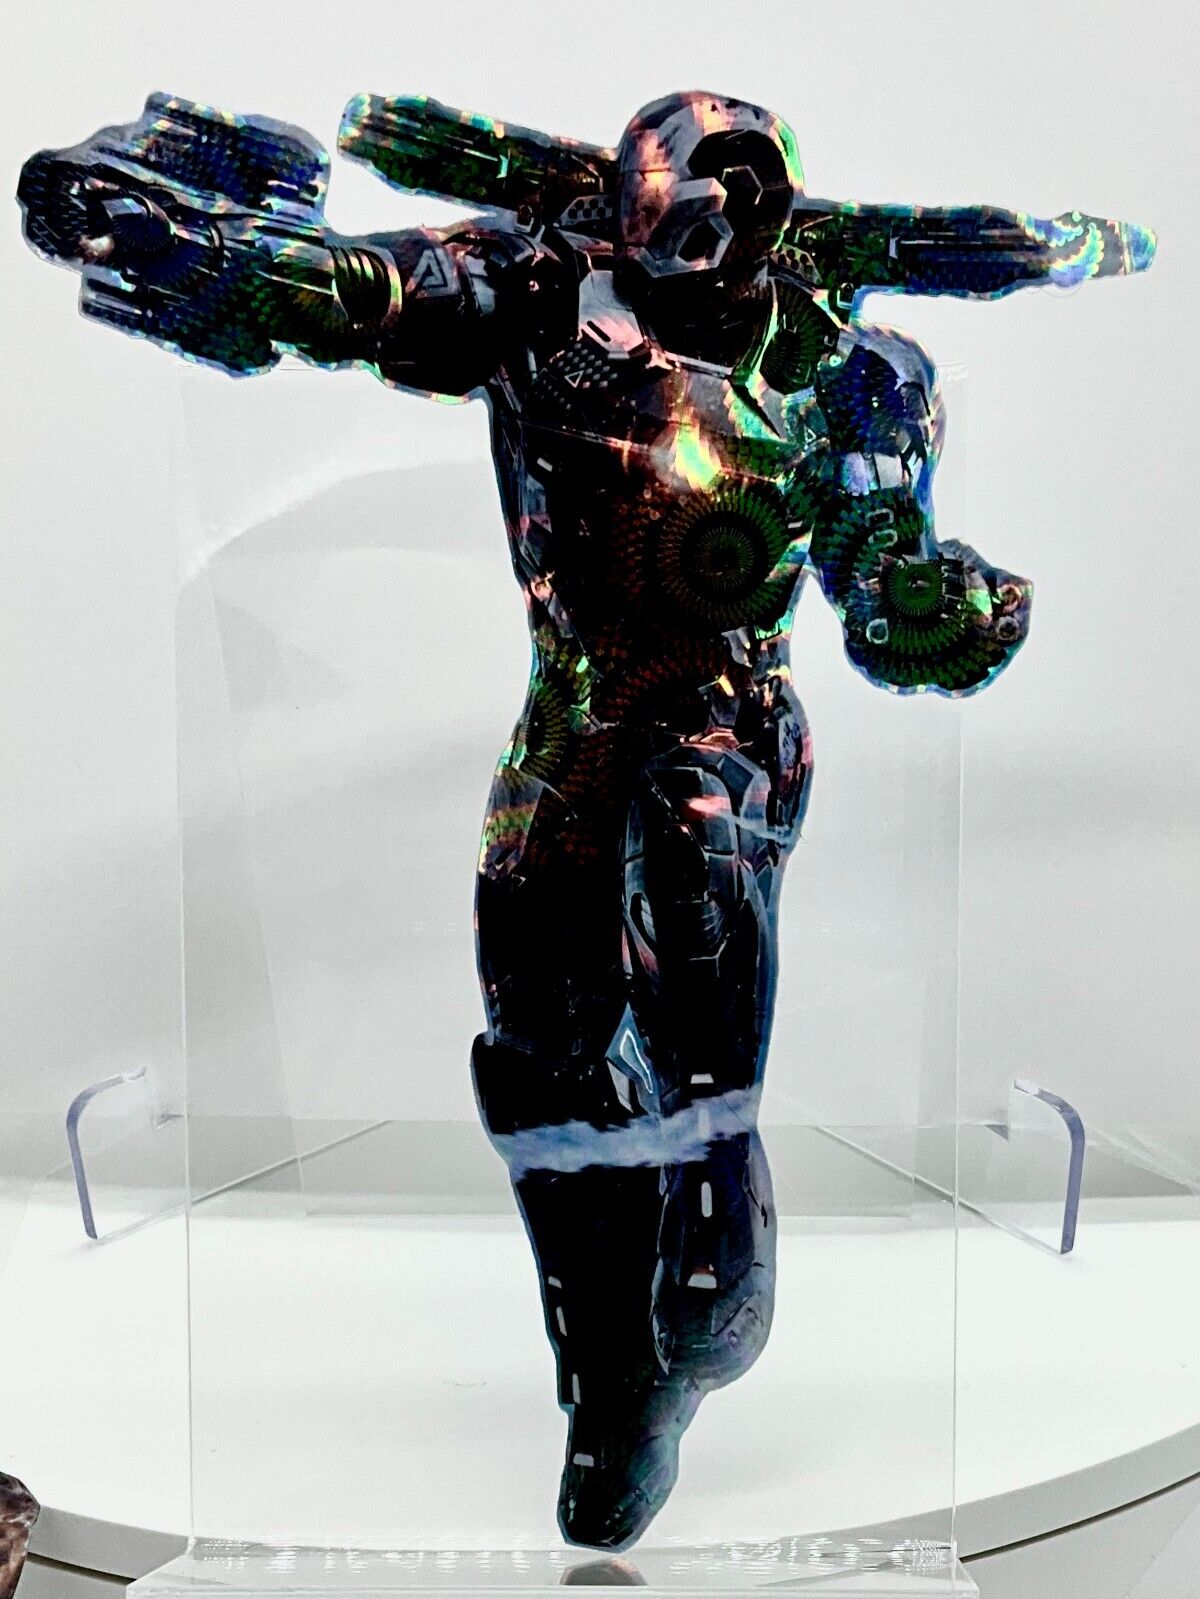 IRON MAN WAR MACHINE  HOLOGRAPHIC PREMIUM VINYL STICKER 5.5"x4" MARVEL